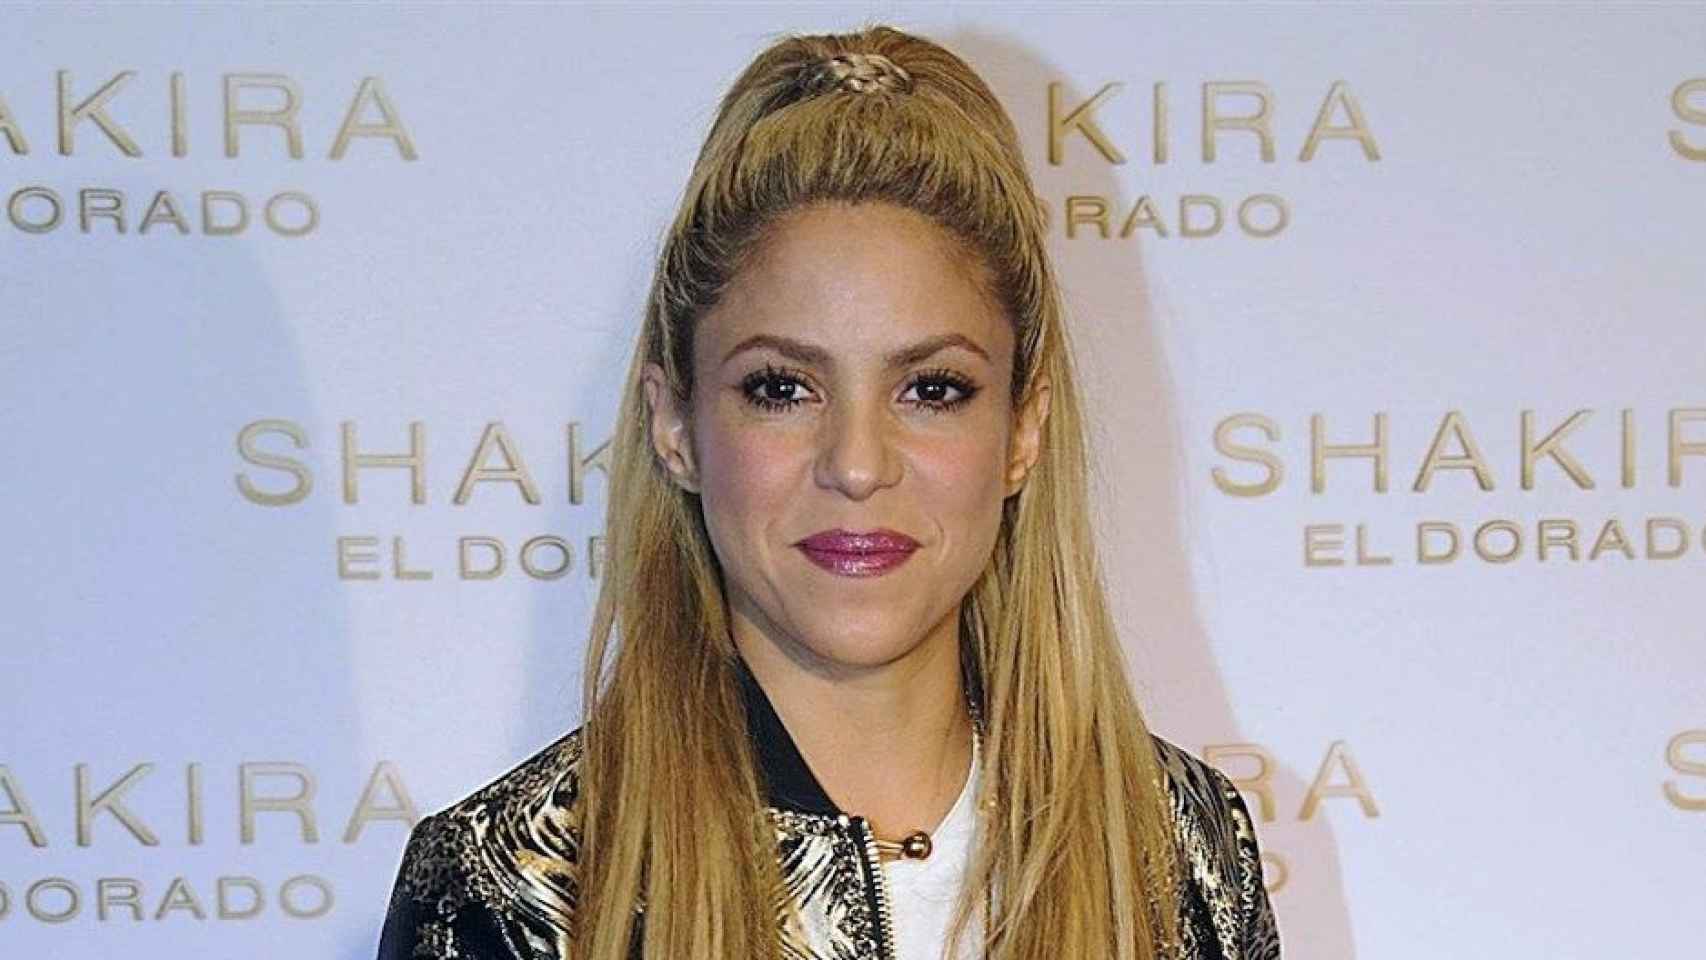 Shakira en un acto de promoción de la gira El Dorado / EP